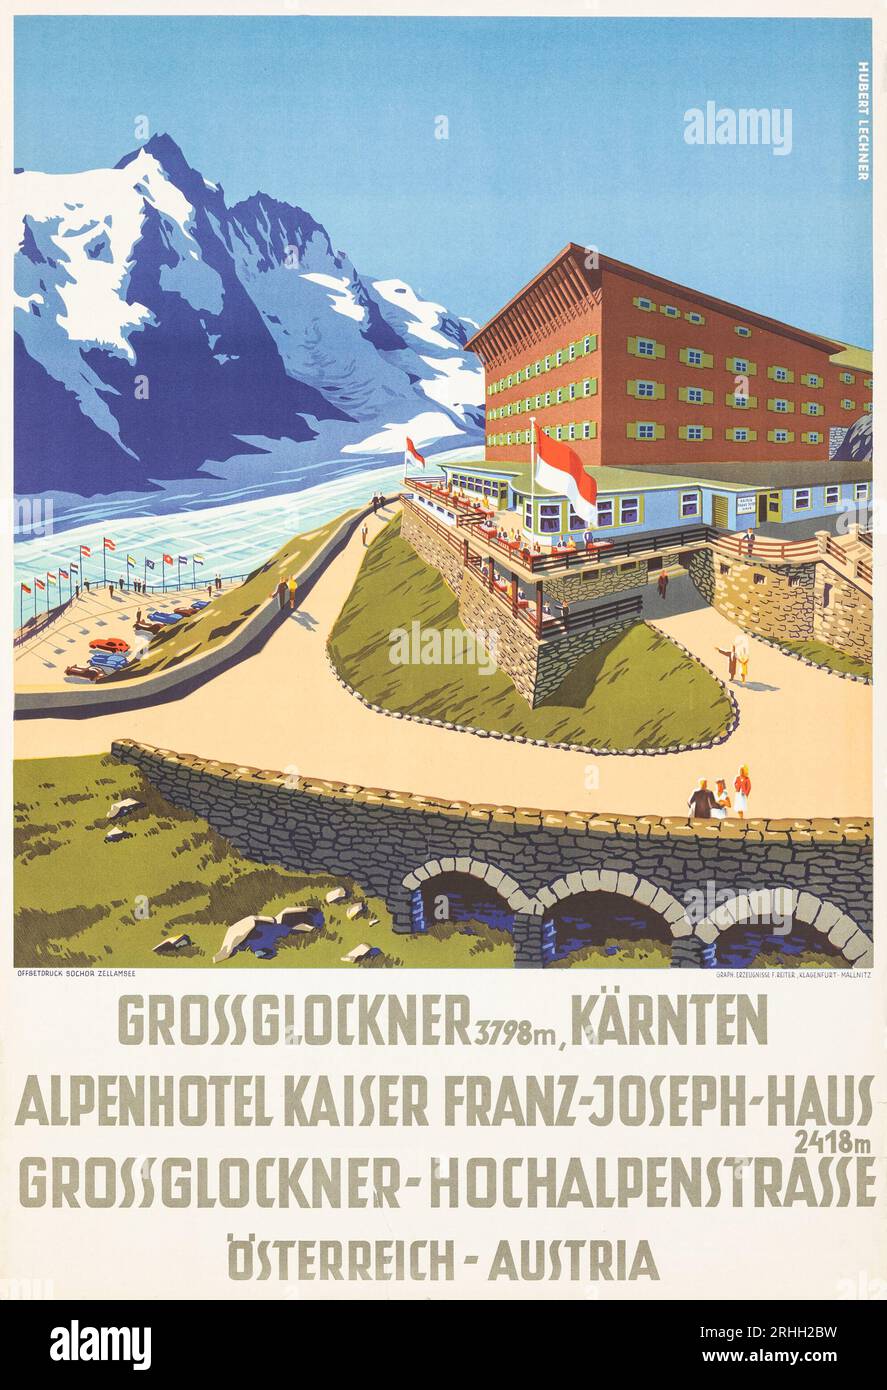 Grossglockner, Austria (1920s). Travel Poster - Herbert Lechner Artwork - Alpenhotel Kaiser Franz-Joseph-Haus-Austrian Hotel poster Stock Photo